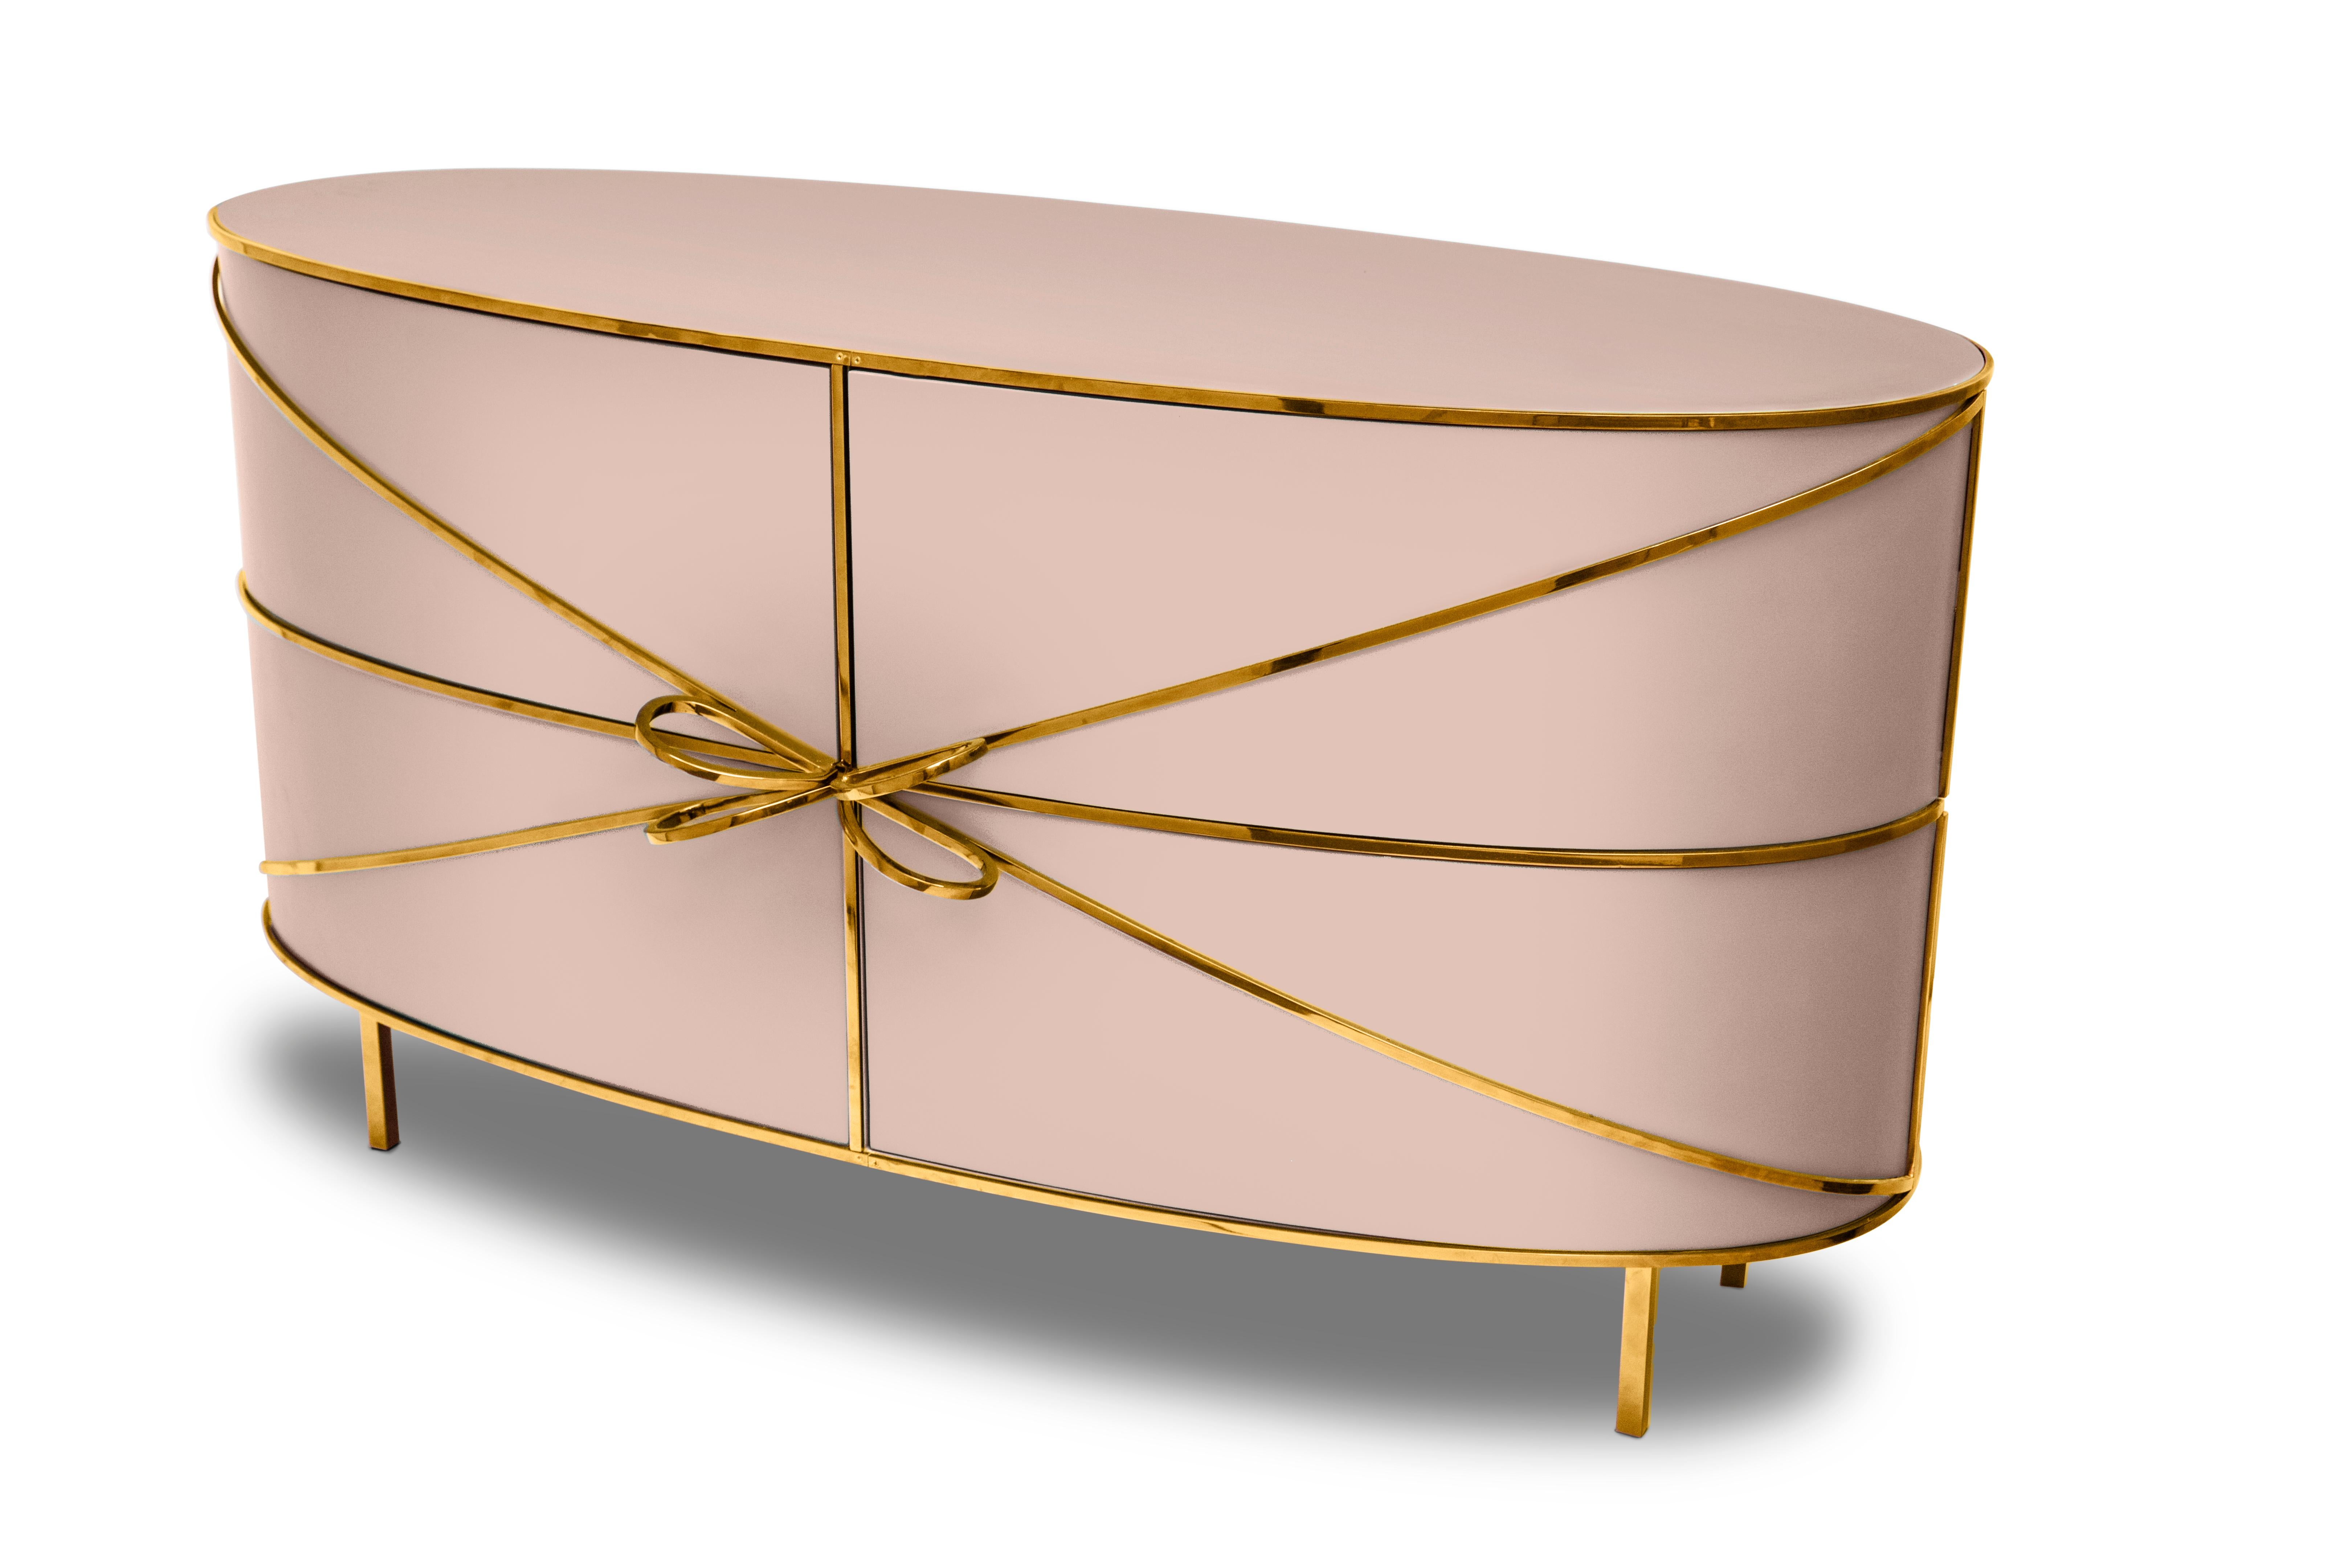 88 Secrets Sideboard Pink with Gold Trims de Nika Zupanc est un élégant meuble rose aux lignes sensuelles et féminines avec de luxueuses garnitures métalliques en or. Une pièce maîtresse dans tout espace intérieur !

Nika Zupanc, designer slovène de